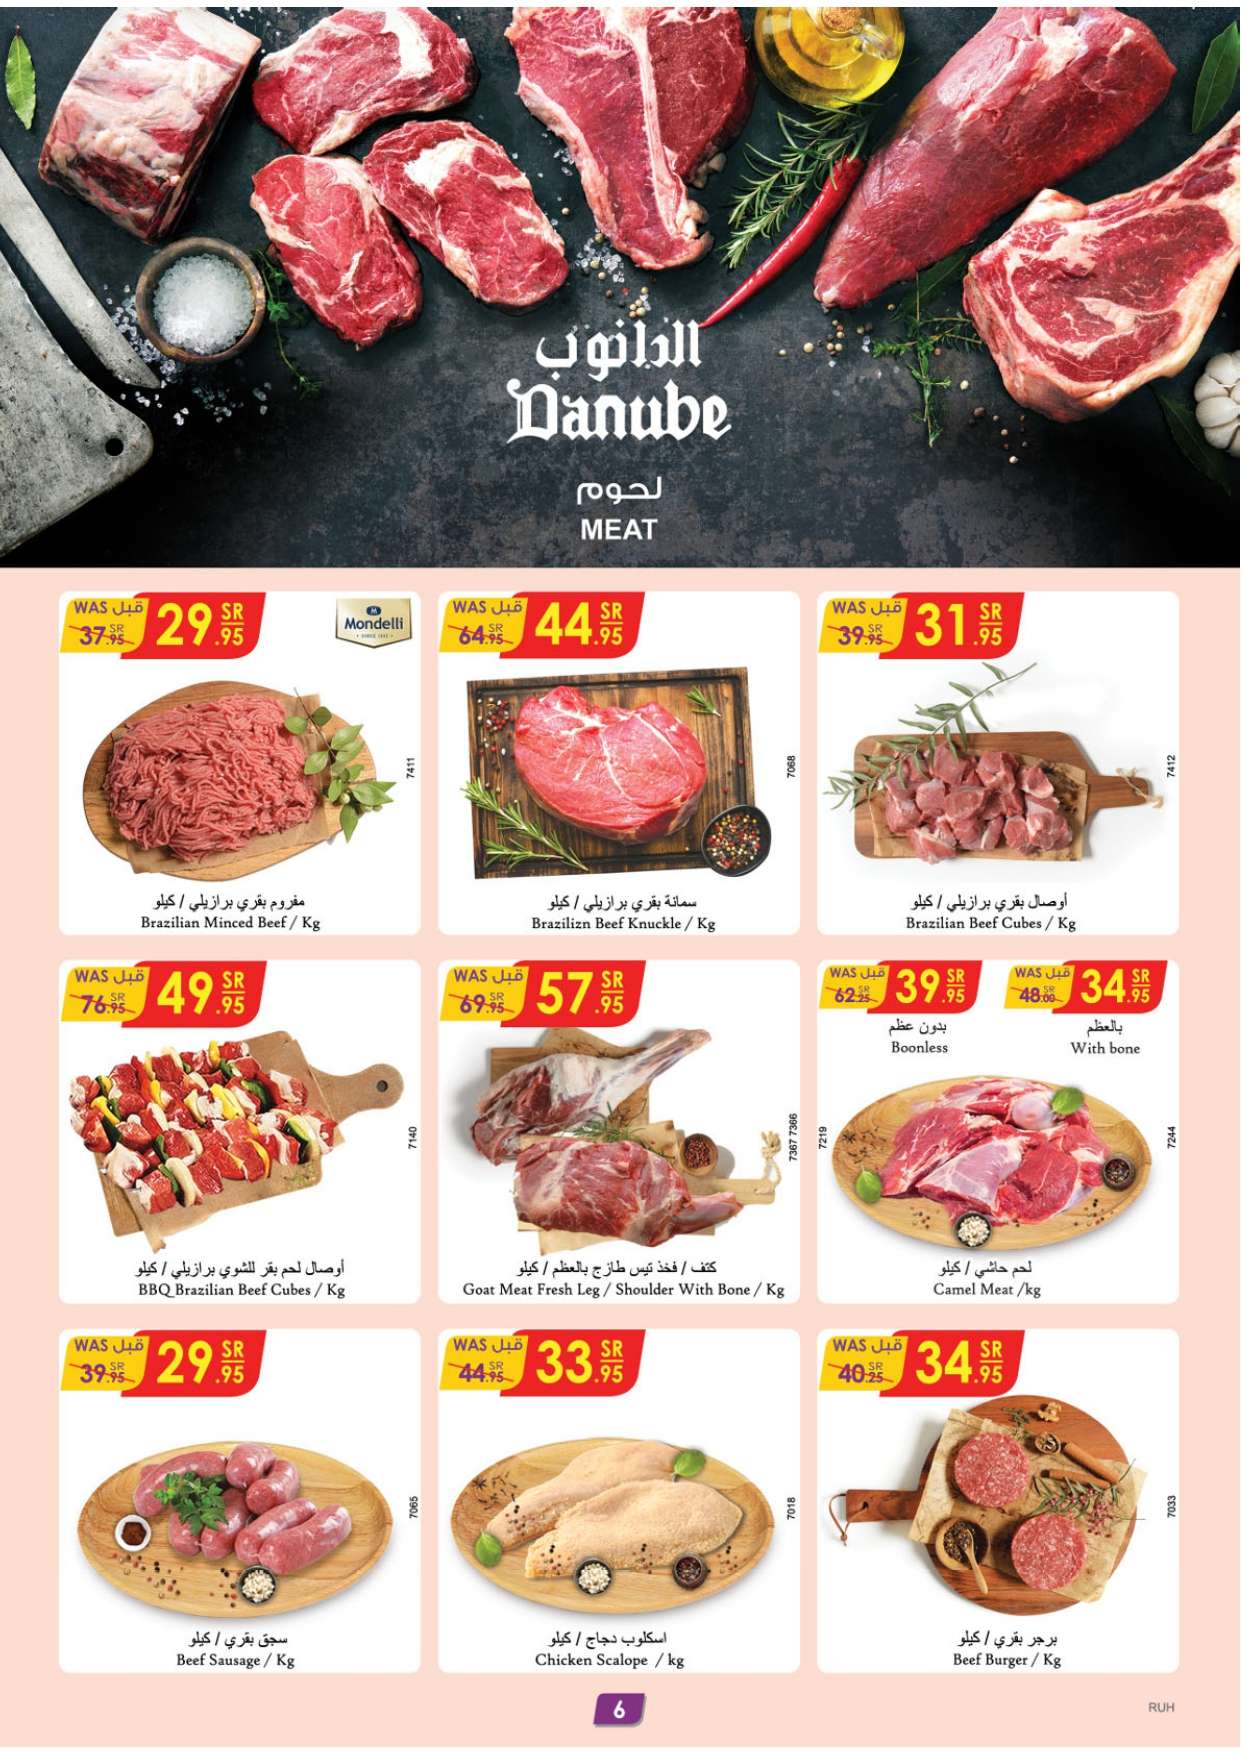 ZHa9Pf - تسوق أسبوع المأكولات العالمية في عروض الدانوب الرياض الاربعاء 1-5-1445 هـ الموافق 15 نوفمبر 2023